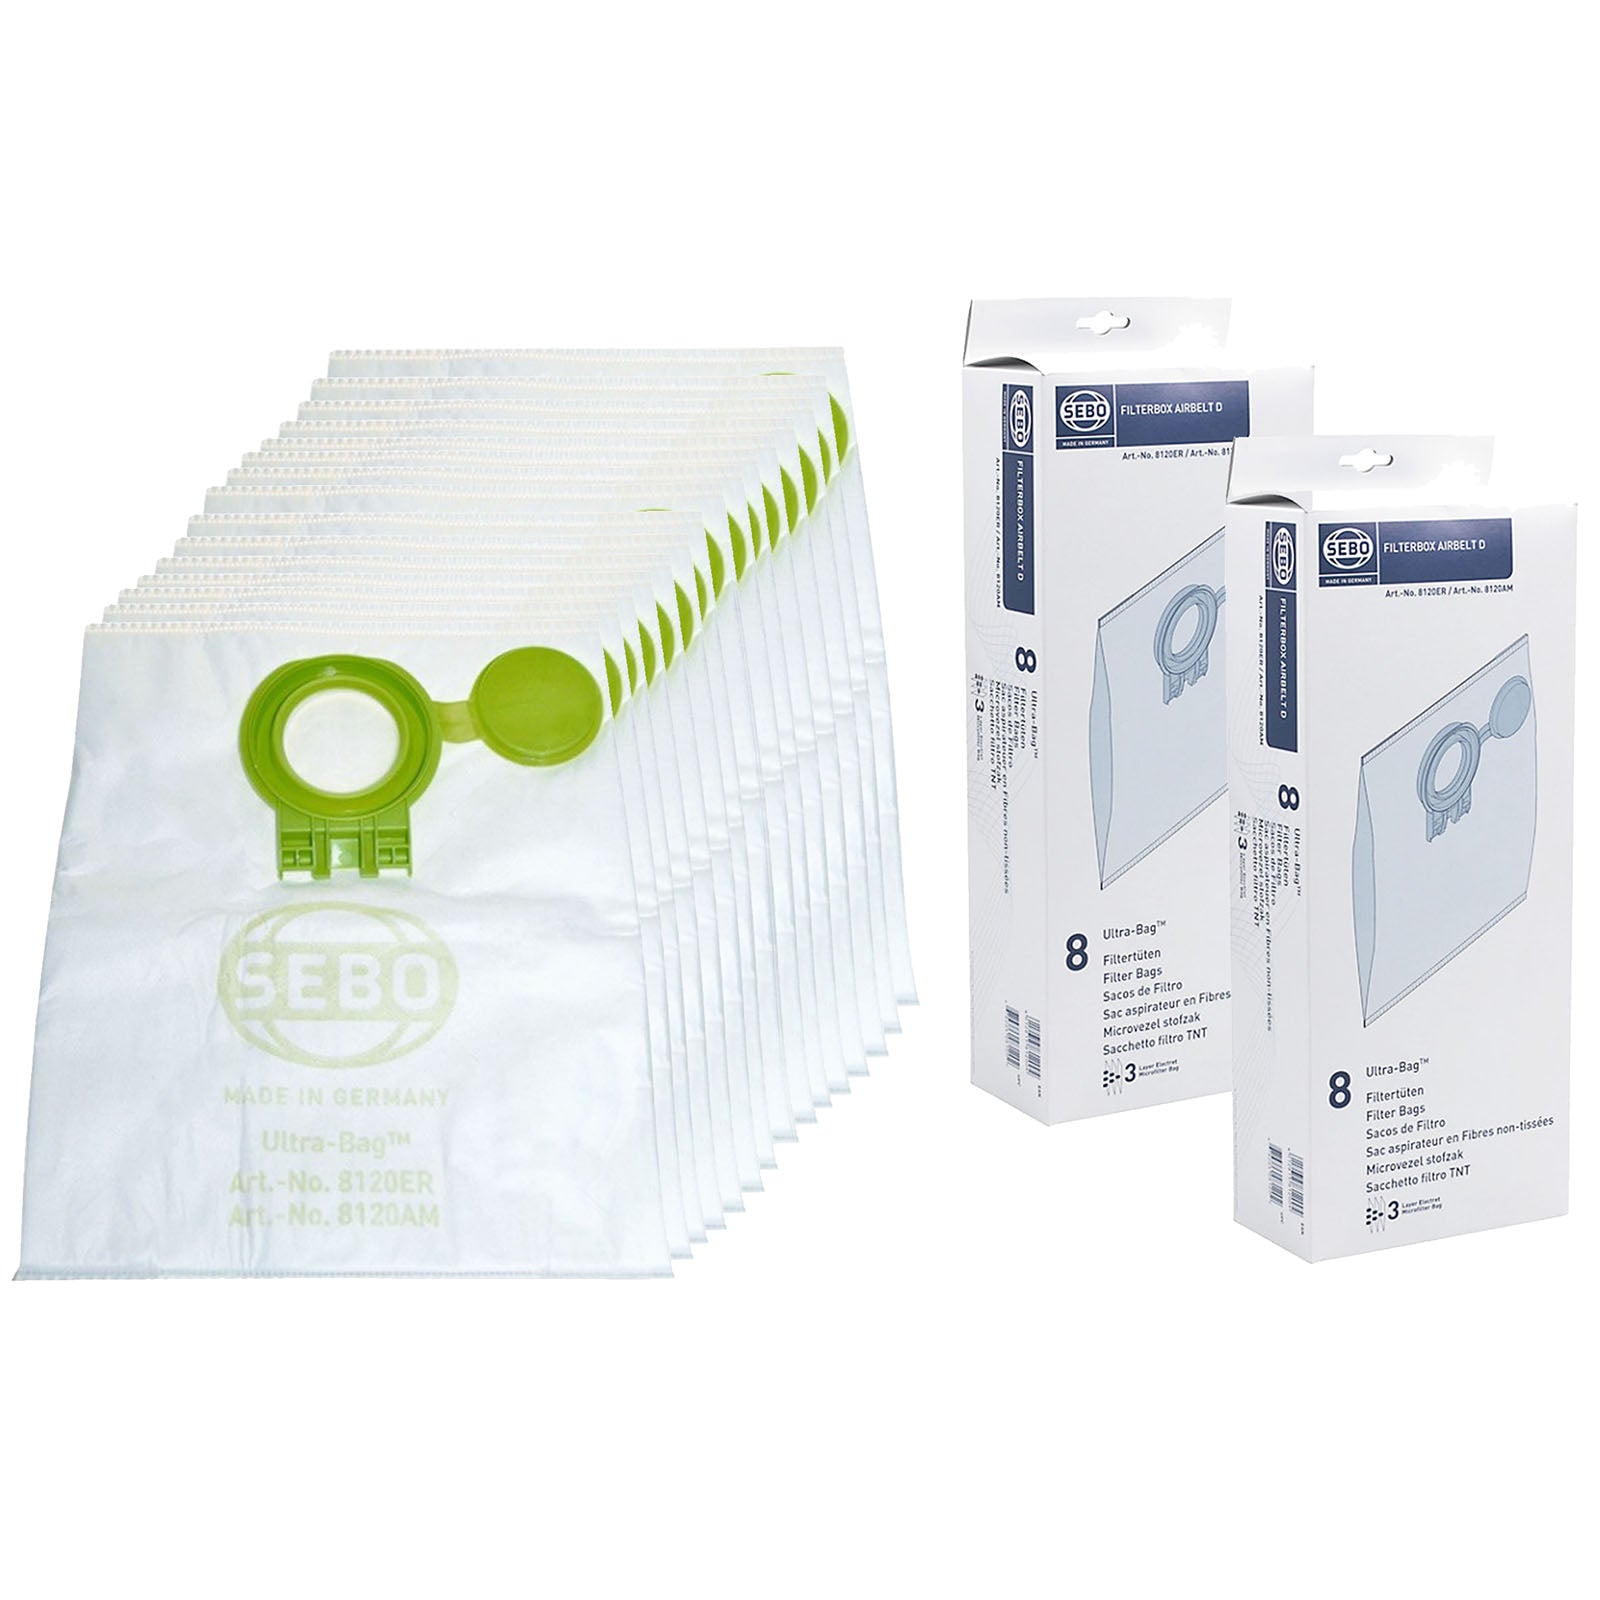 Sebo D2 Airbelt UltraBag Vacuum Cleaner Dust Bags Pack of 16 - 8120ER